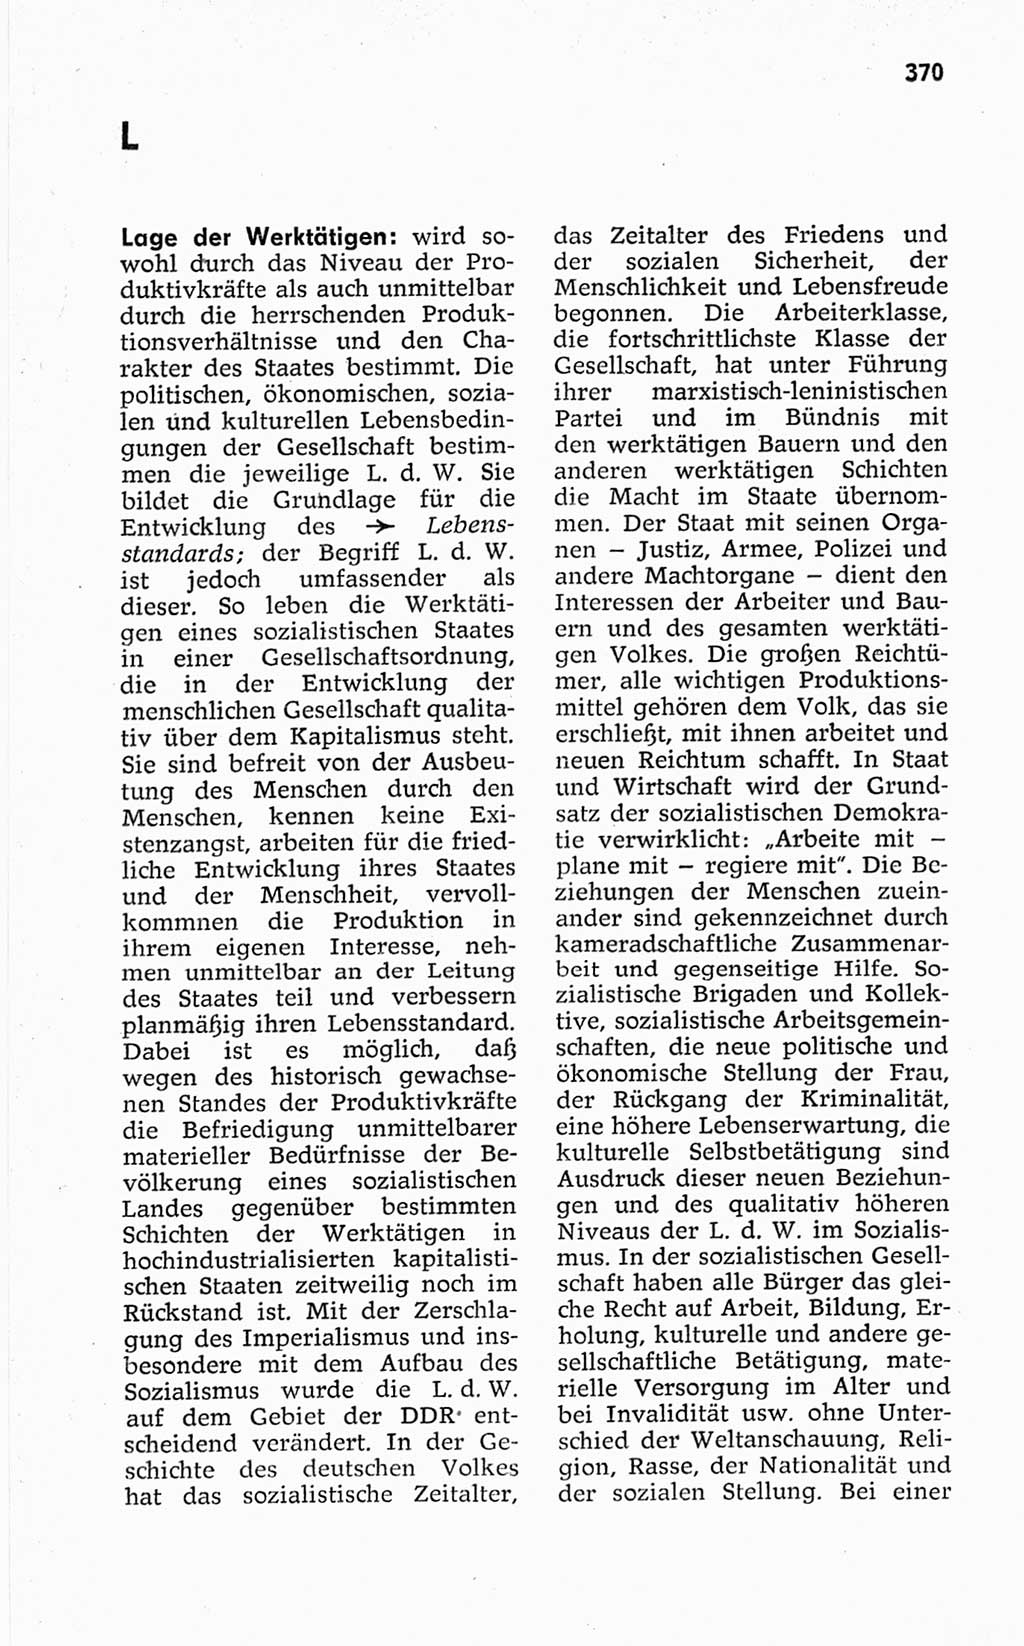 Kleines politisches Wörterbuch [Deutsche Demokratische Republik (DDR)] 1967, Seite 370 (Kl. pol. Wb. DDR 1967, S. 370)